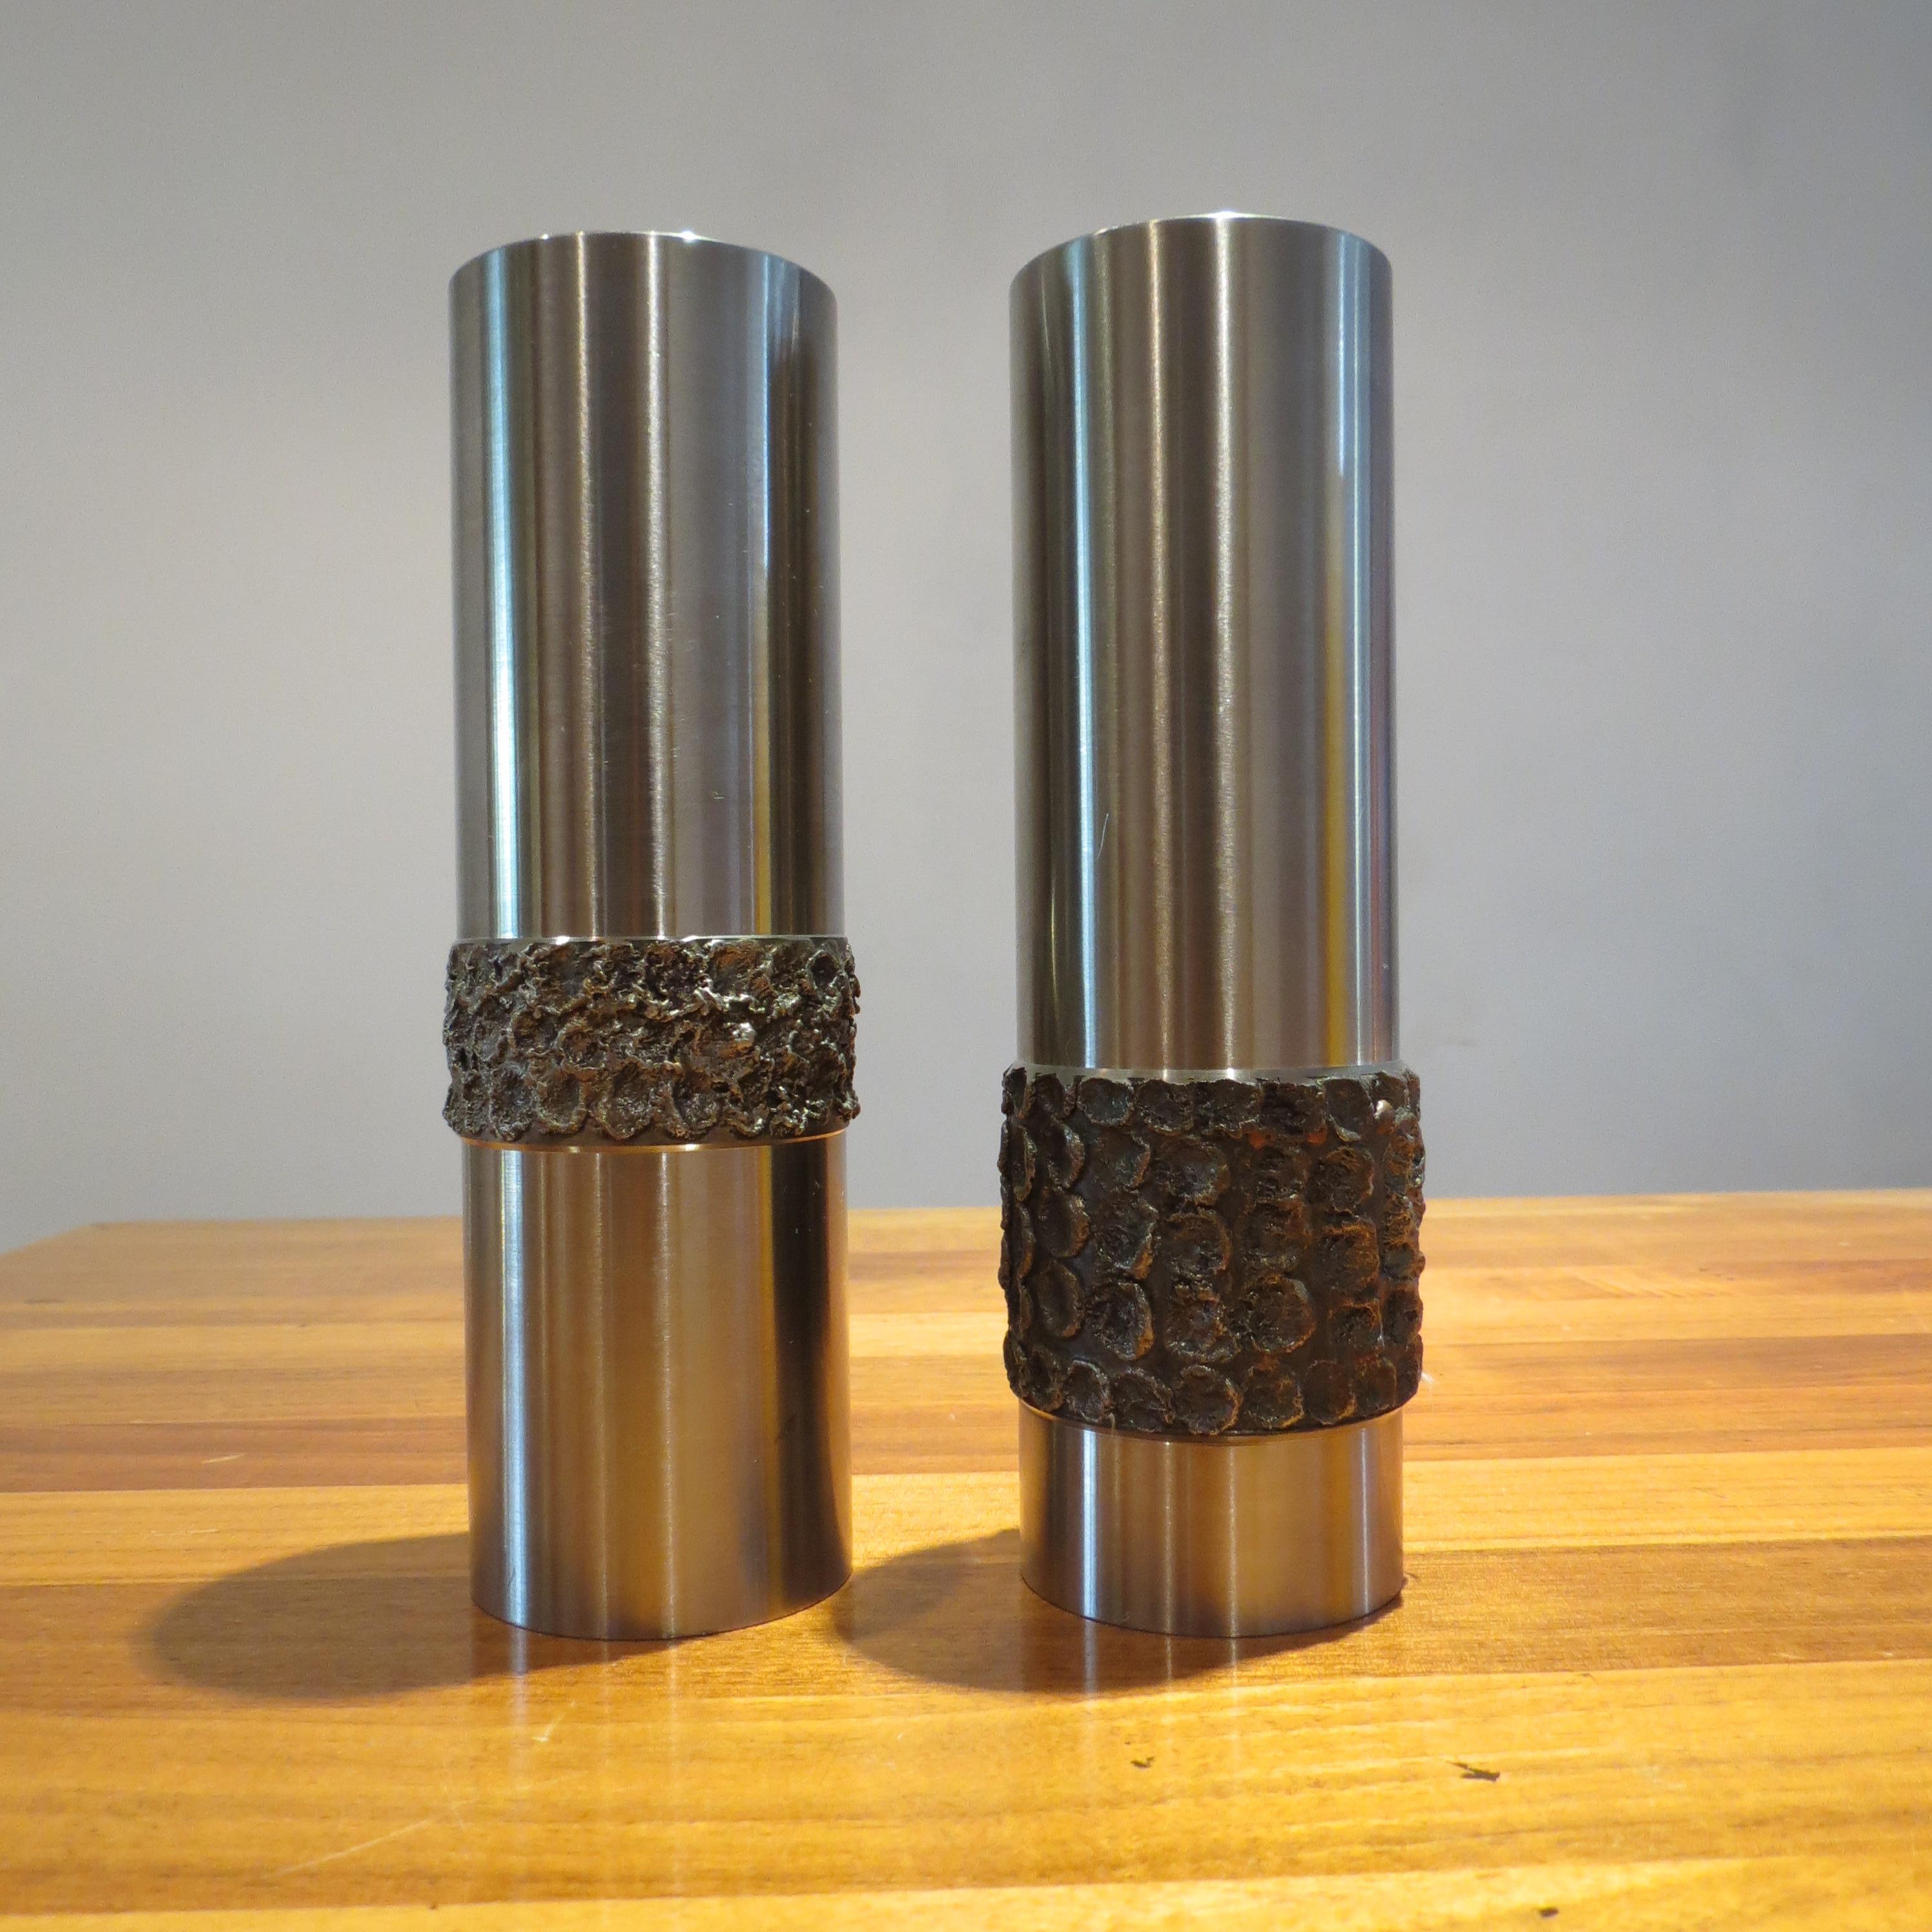 Pair of 1970s German Metal Brutalist Stainless Steel Handcrafted Vases B 5